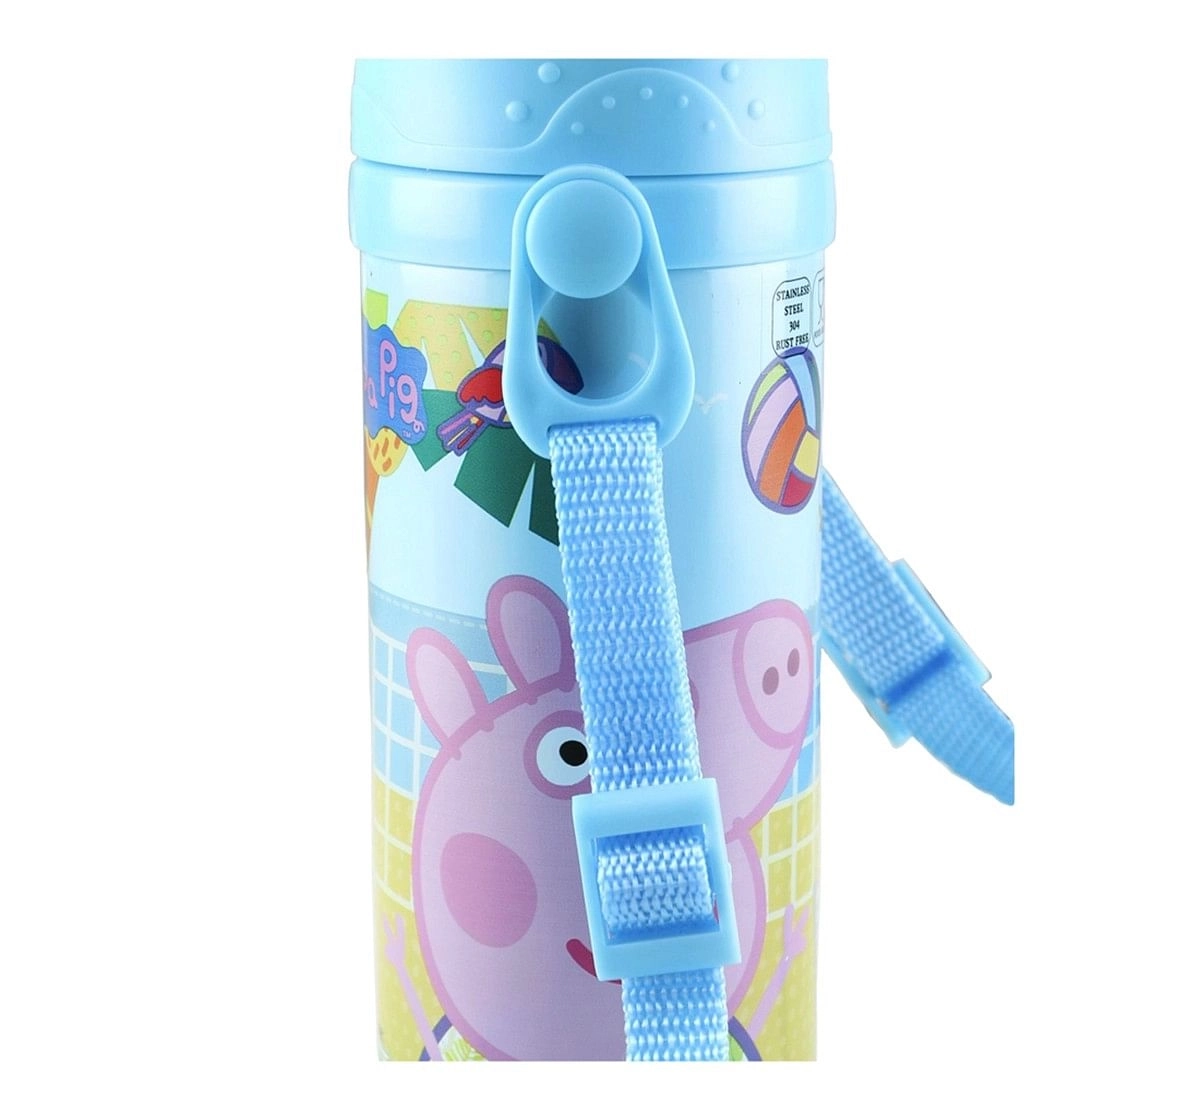 Peppa Pig Fun Steel Inner Water Bottle & Sipper for Kids age 3Y+ (Pink),350 ml